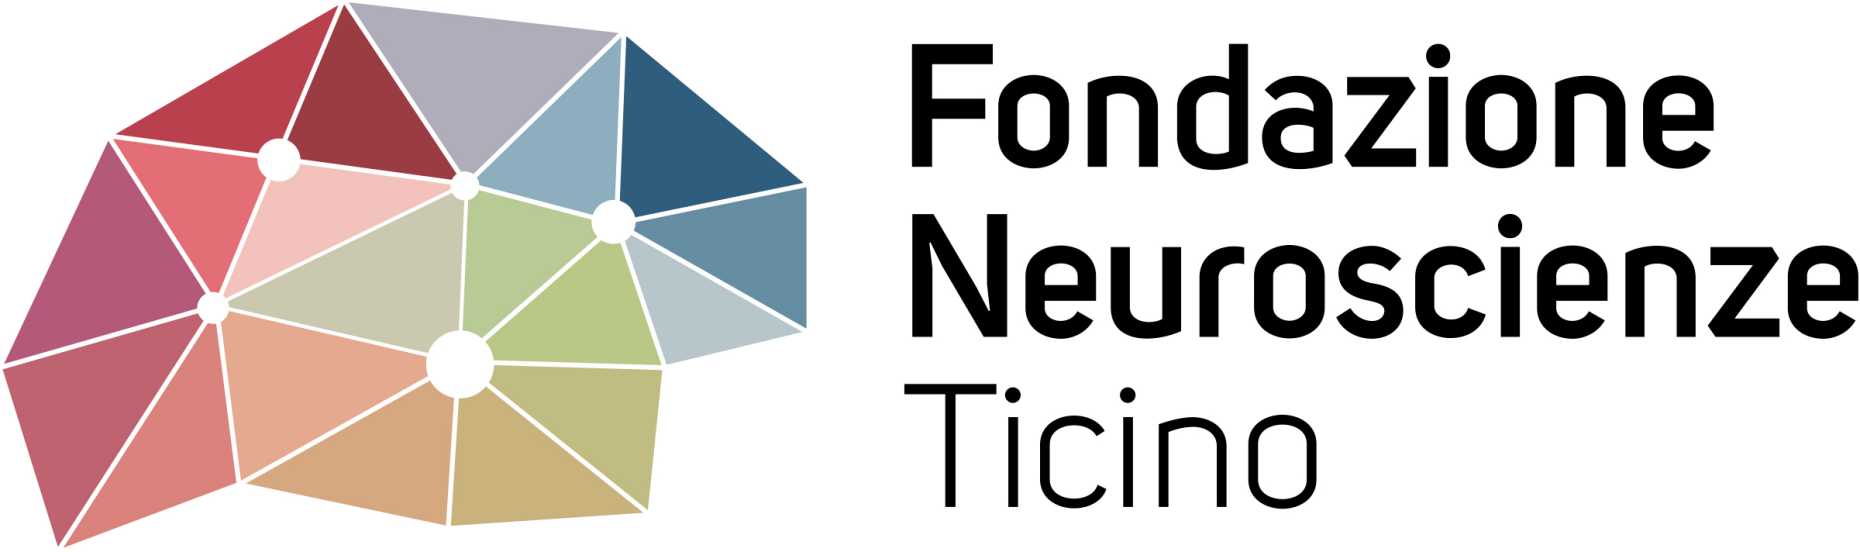 Fondazione Neuroscience Ticino Logo